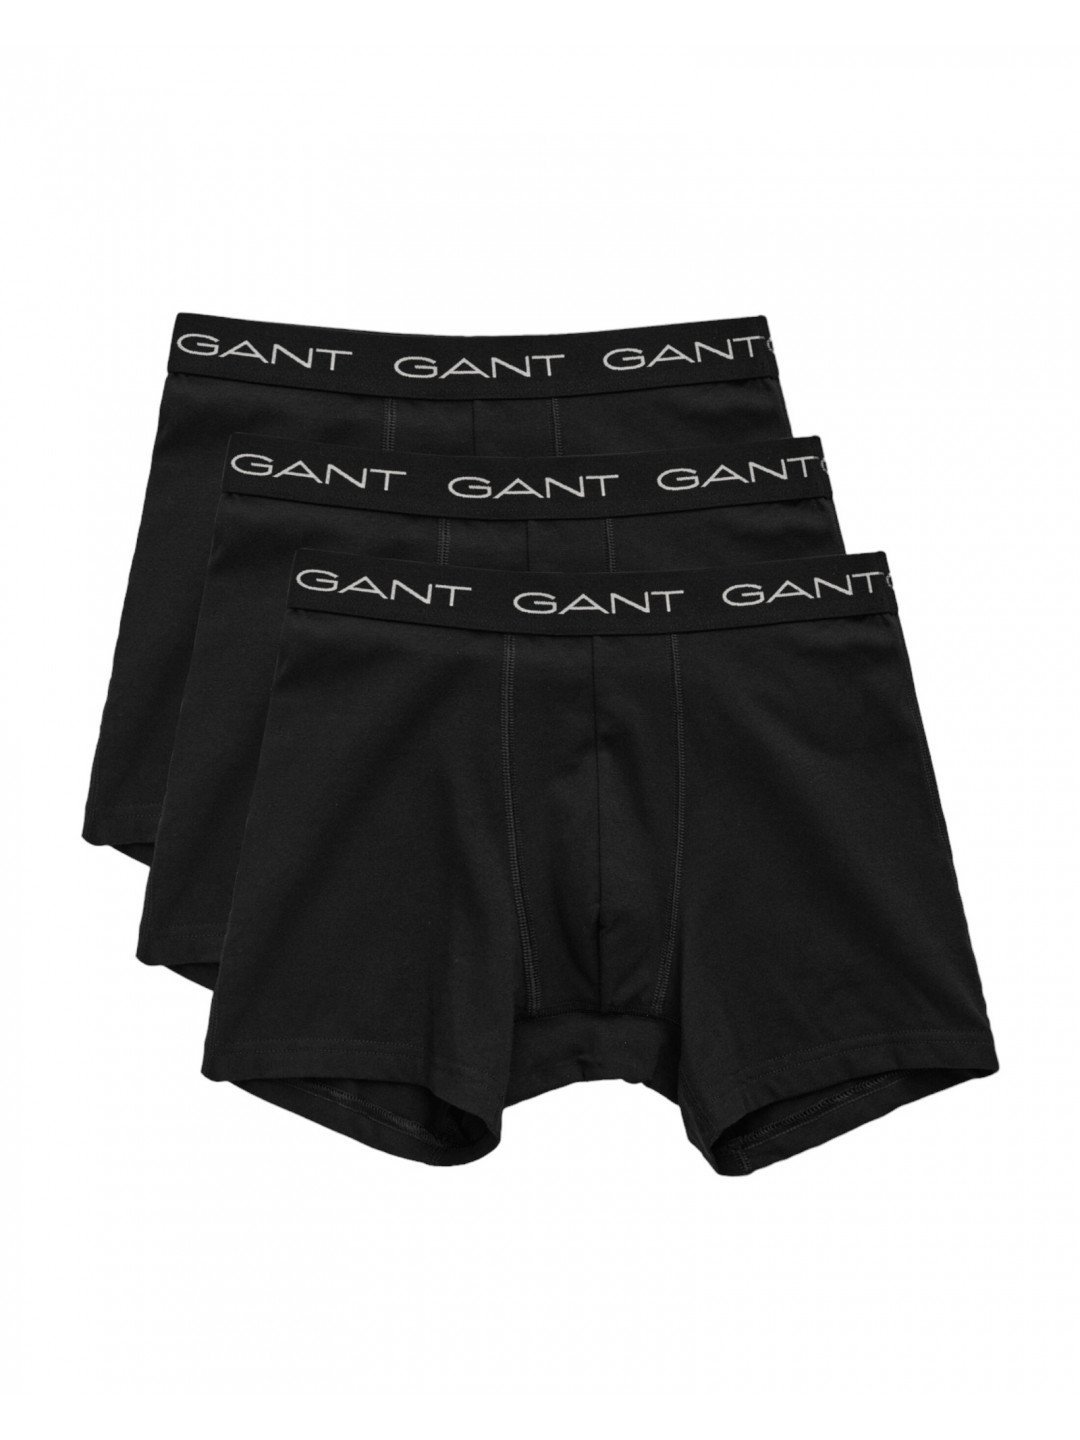 3PACK pánské boxerky Gant černé 900013004-005 L